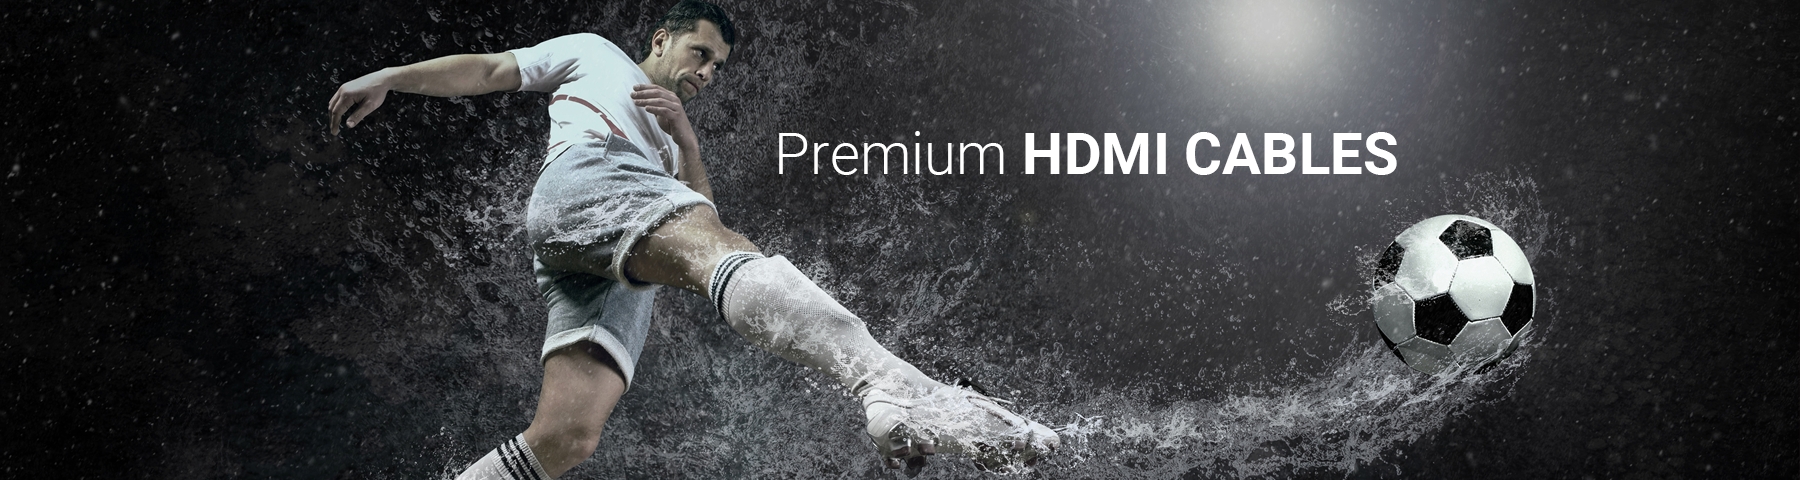 Premium HDMI Cables